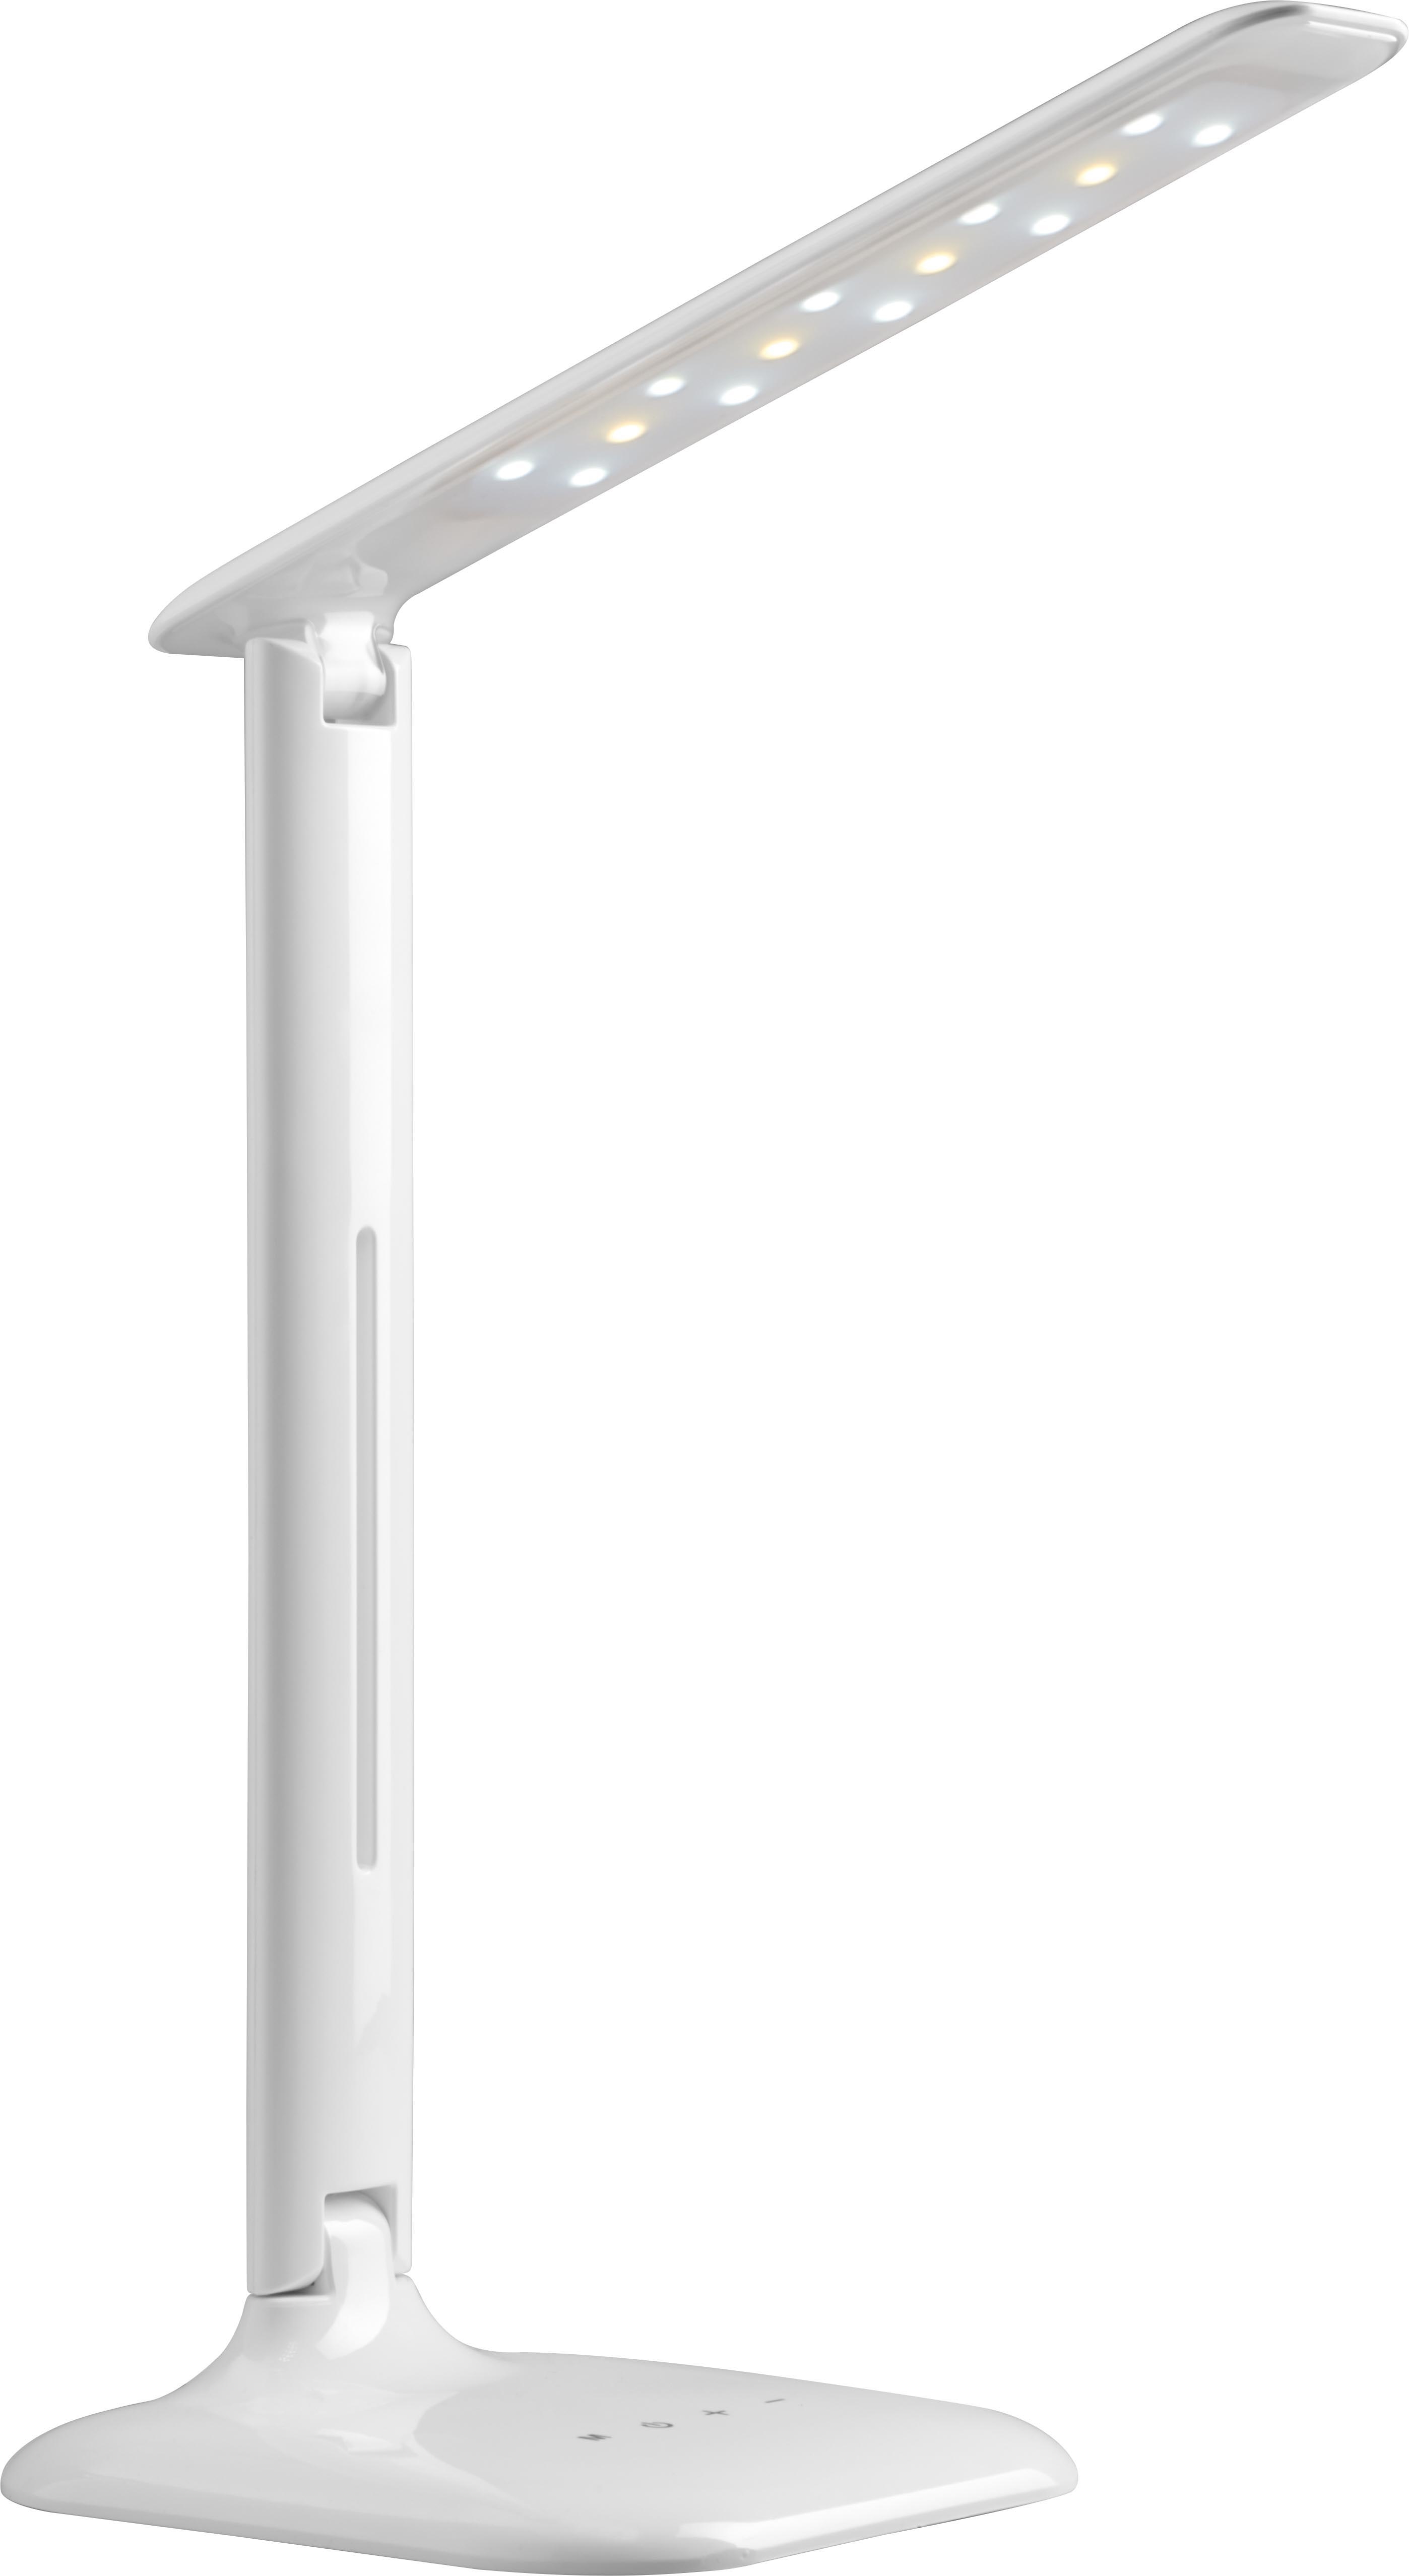 MAGNETOPLAN Lampe de bureau Tropo LED 4424900 201lm, Touch Control 545x150mm